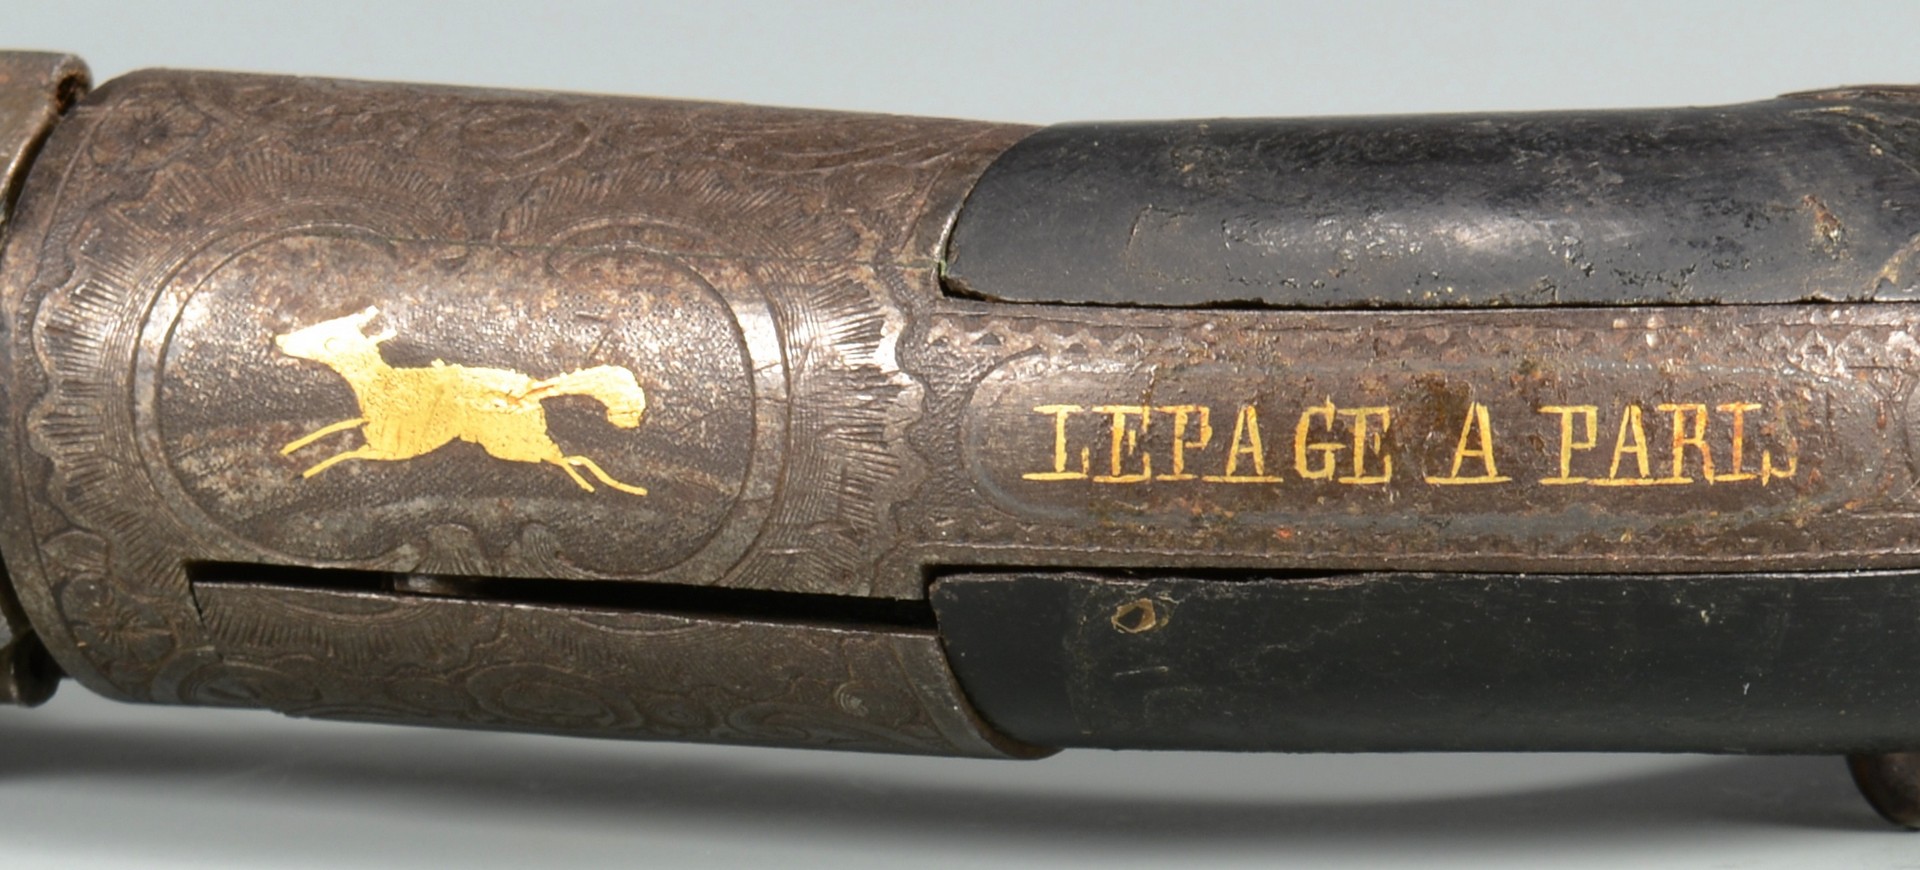 Lot 193: French Mariette Pepperbox Pistol, Lepage Paris